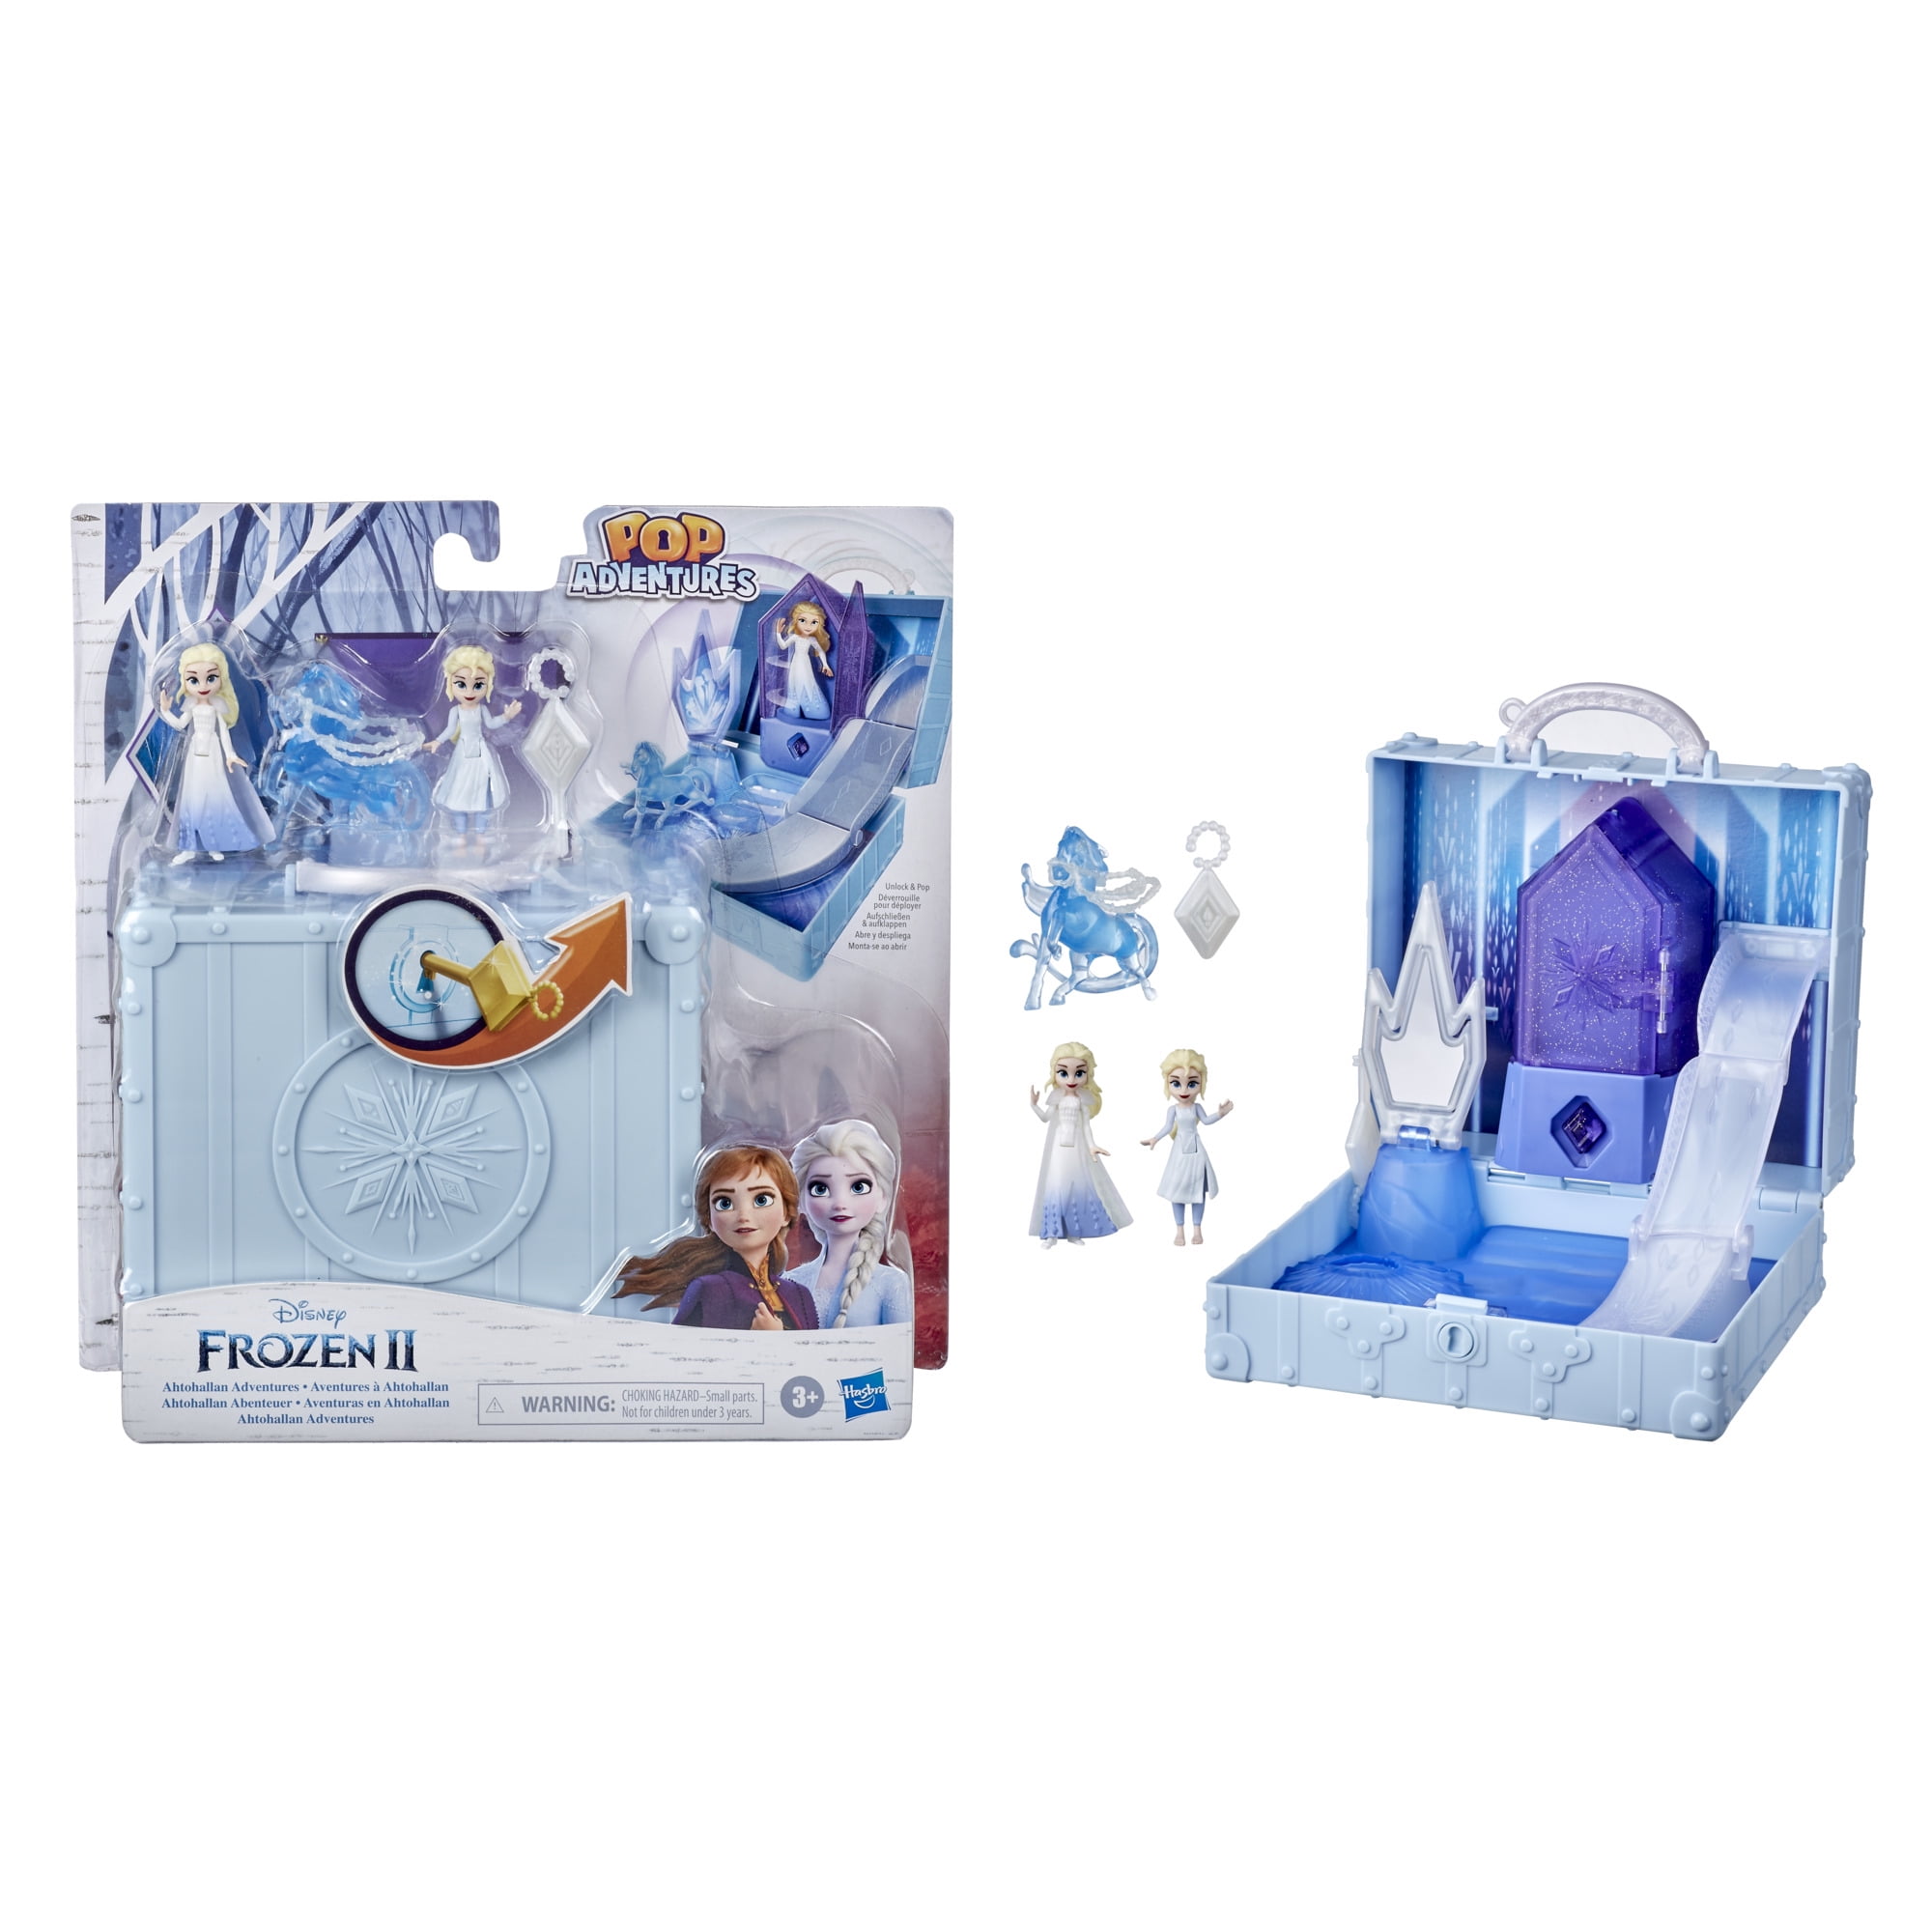 Disney Frozen 2 II Pop Adventures Peel & Reveal 5 Pack Toys Figures Dolls Elsa 